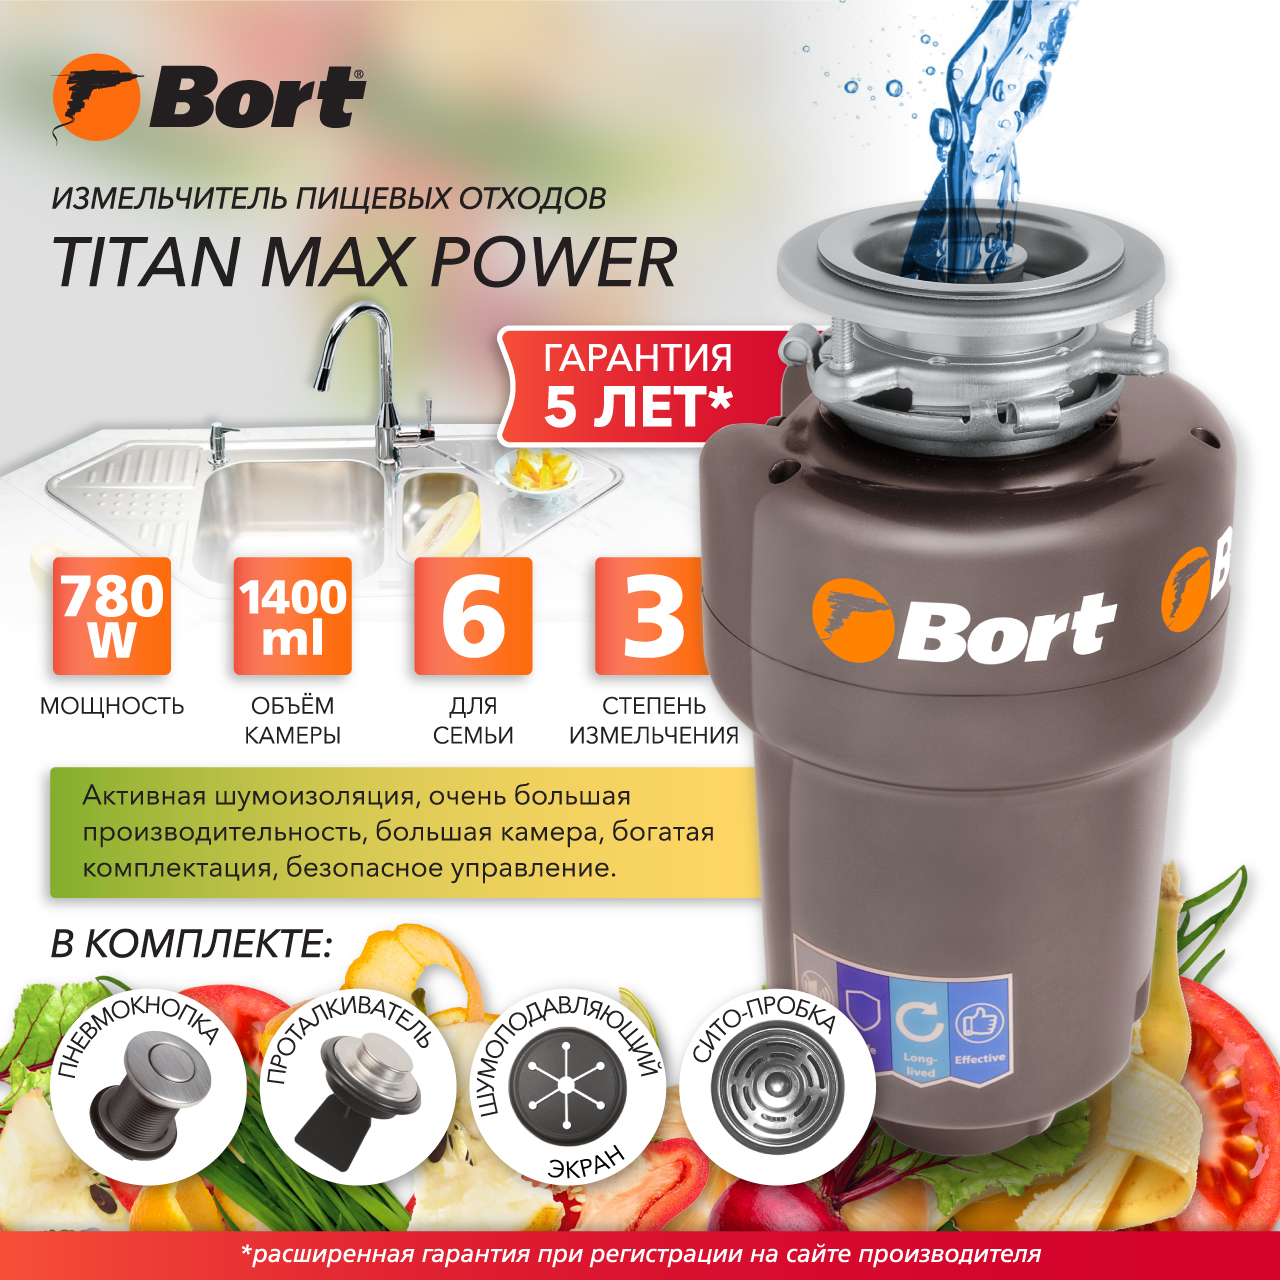 Измельчитель пищевых отходов Bort TITAN MAX POWER (91275790) серебристый измельчитель пищевых отходов bort titan 5000 91275783 серебристый